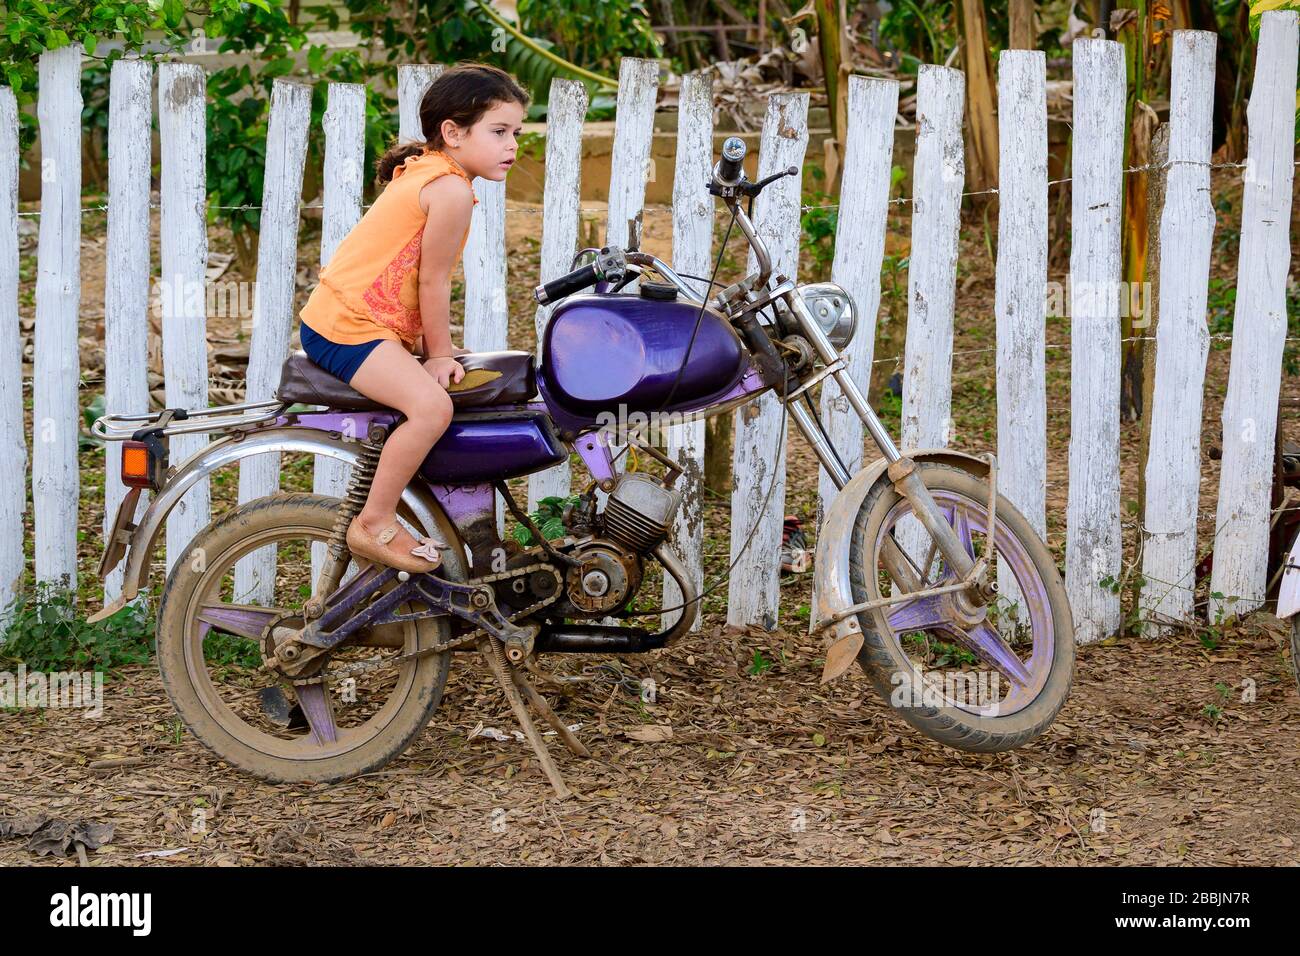 Niña descansando en motocicleta, Vinales, Provincia de Pinar del Río, Cuba Foto de stock